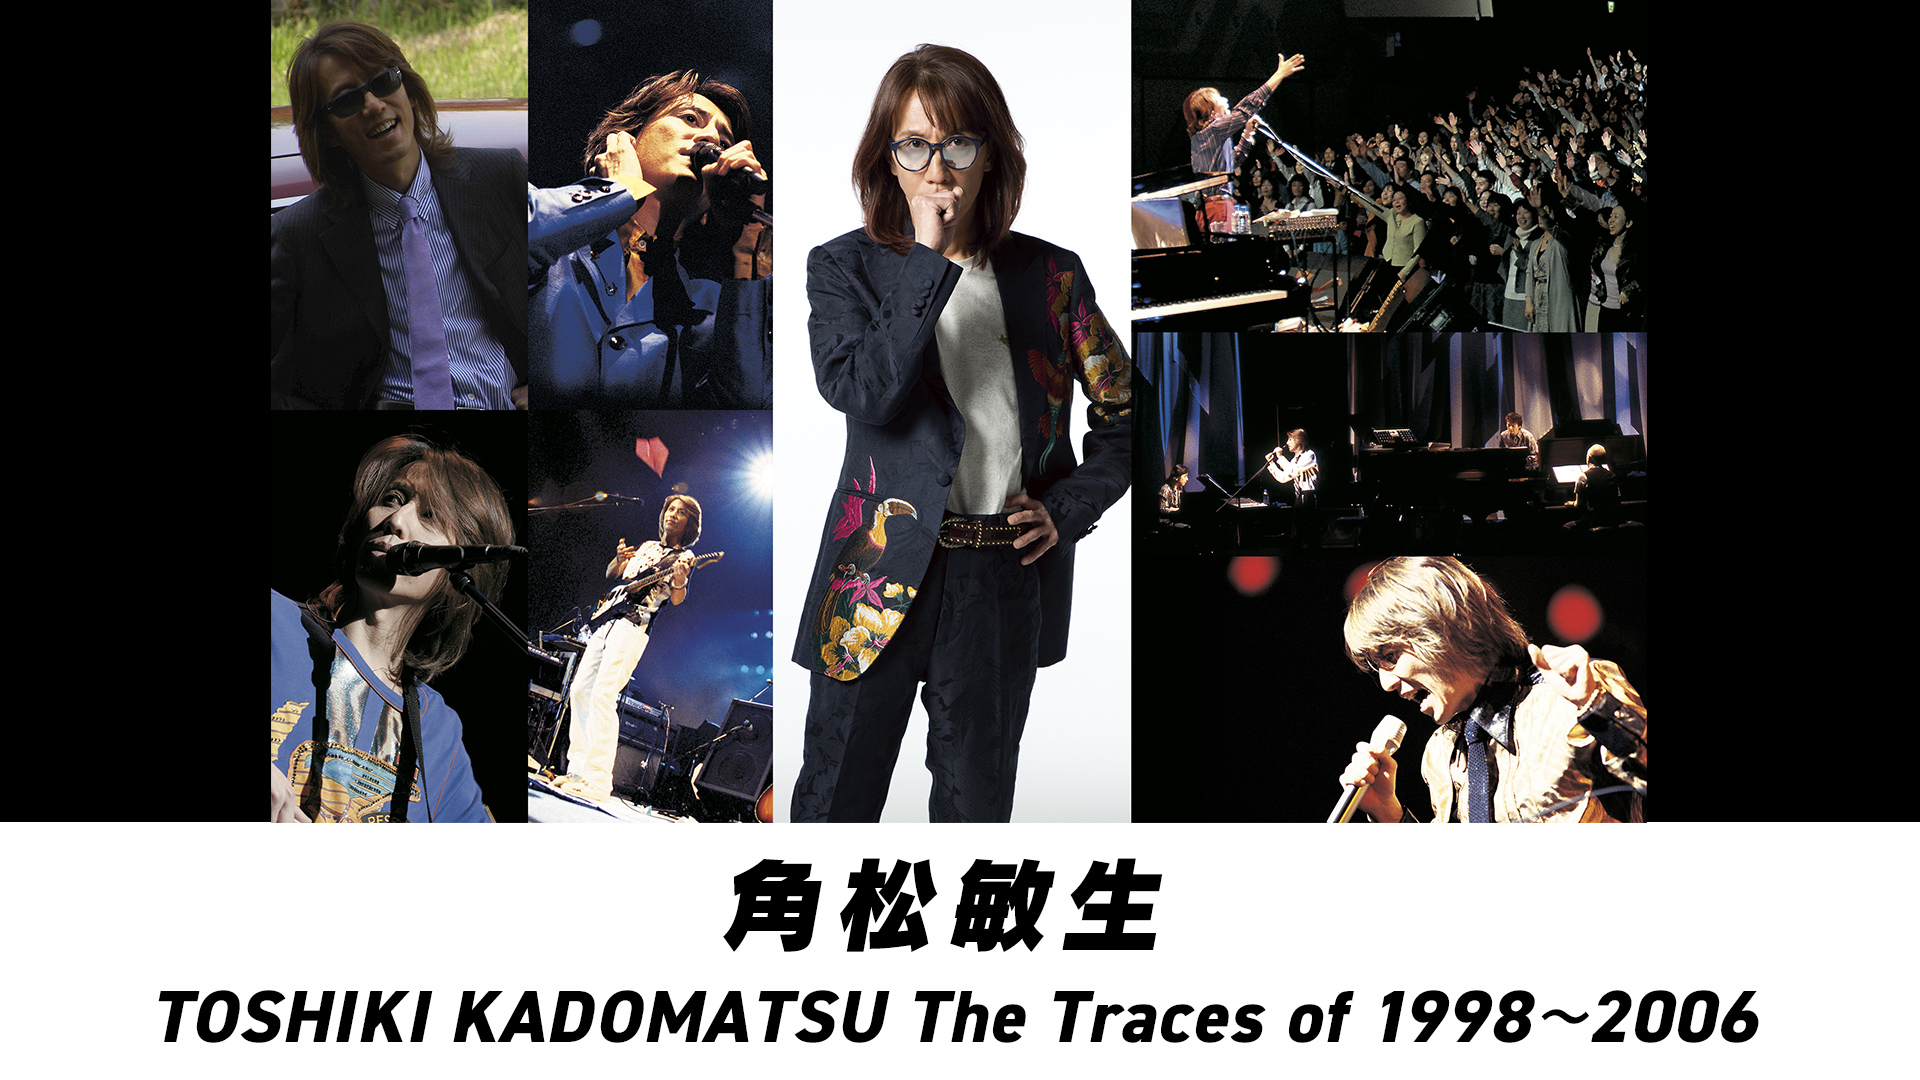 Toshiki Kadomatsu  Traceso of 1998 2006盤面概ね良好